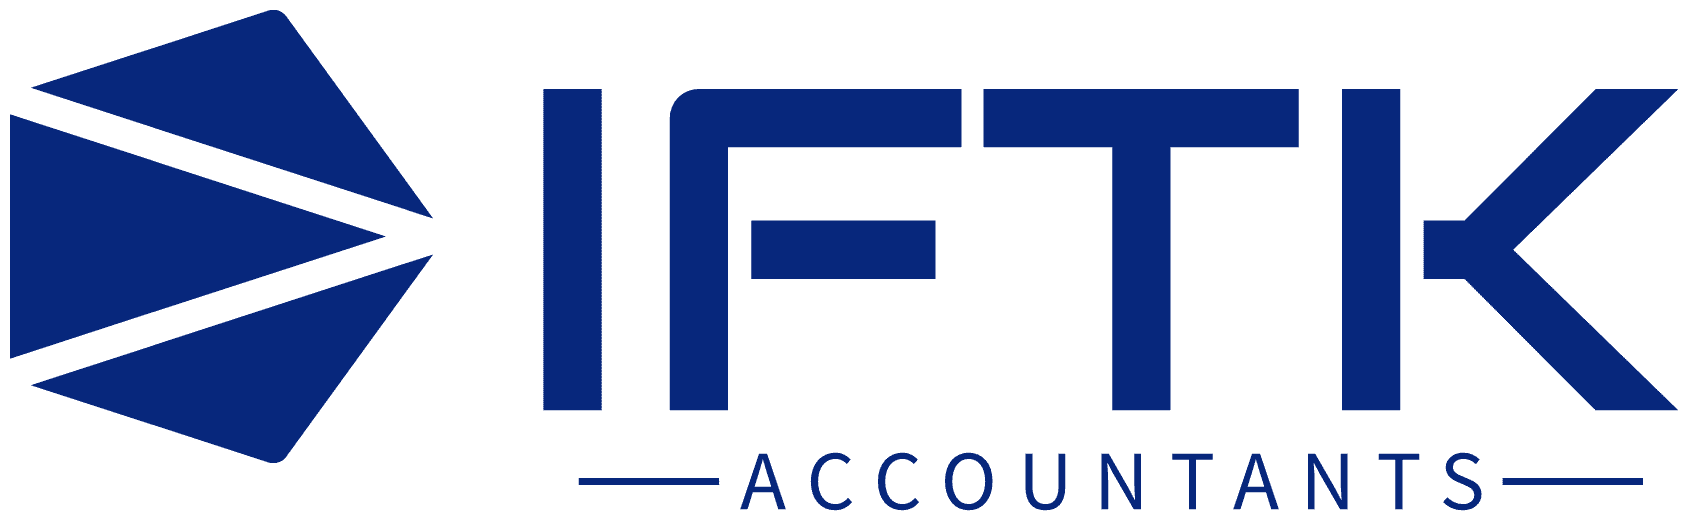 IFTK Accountants